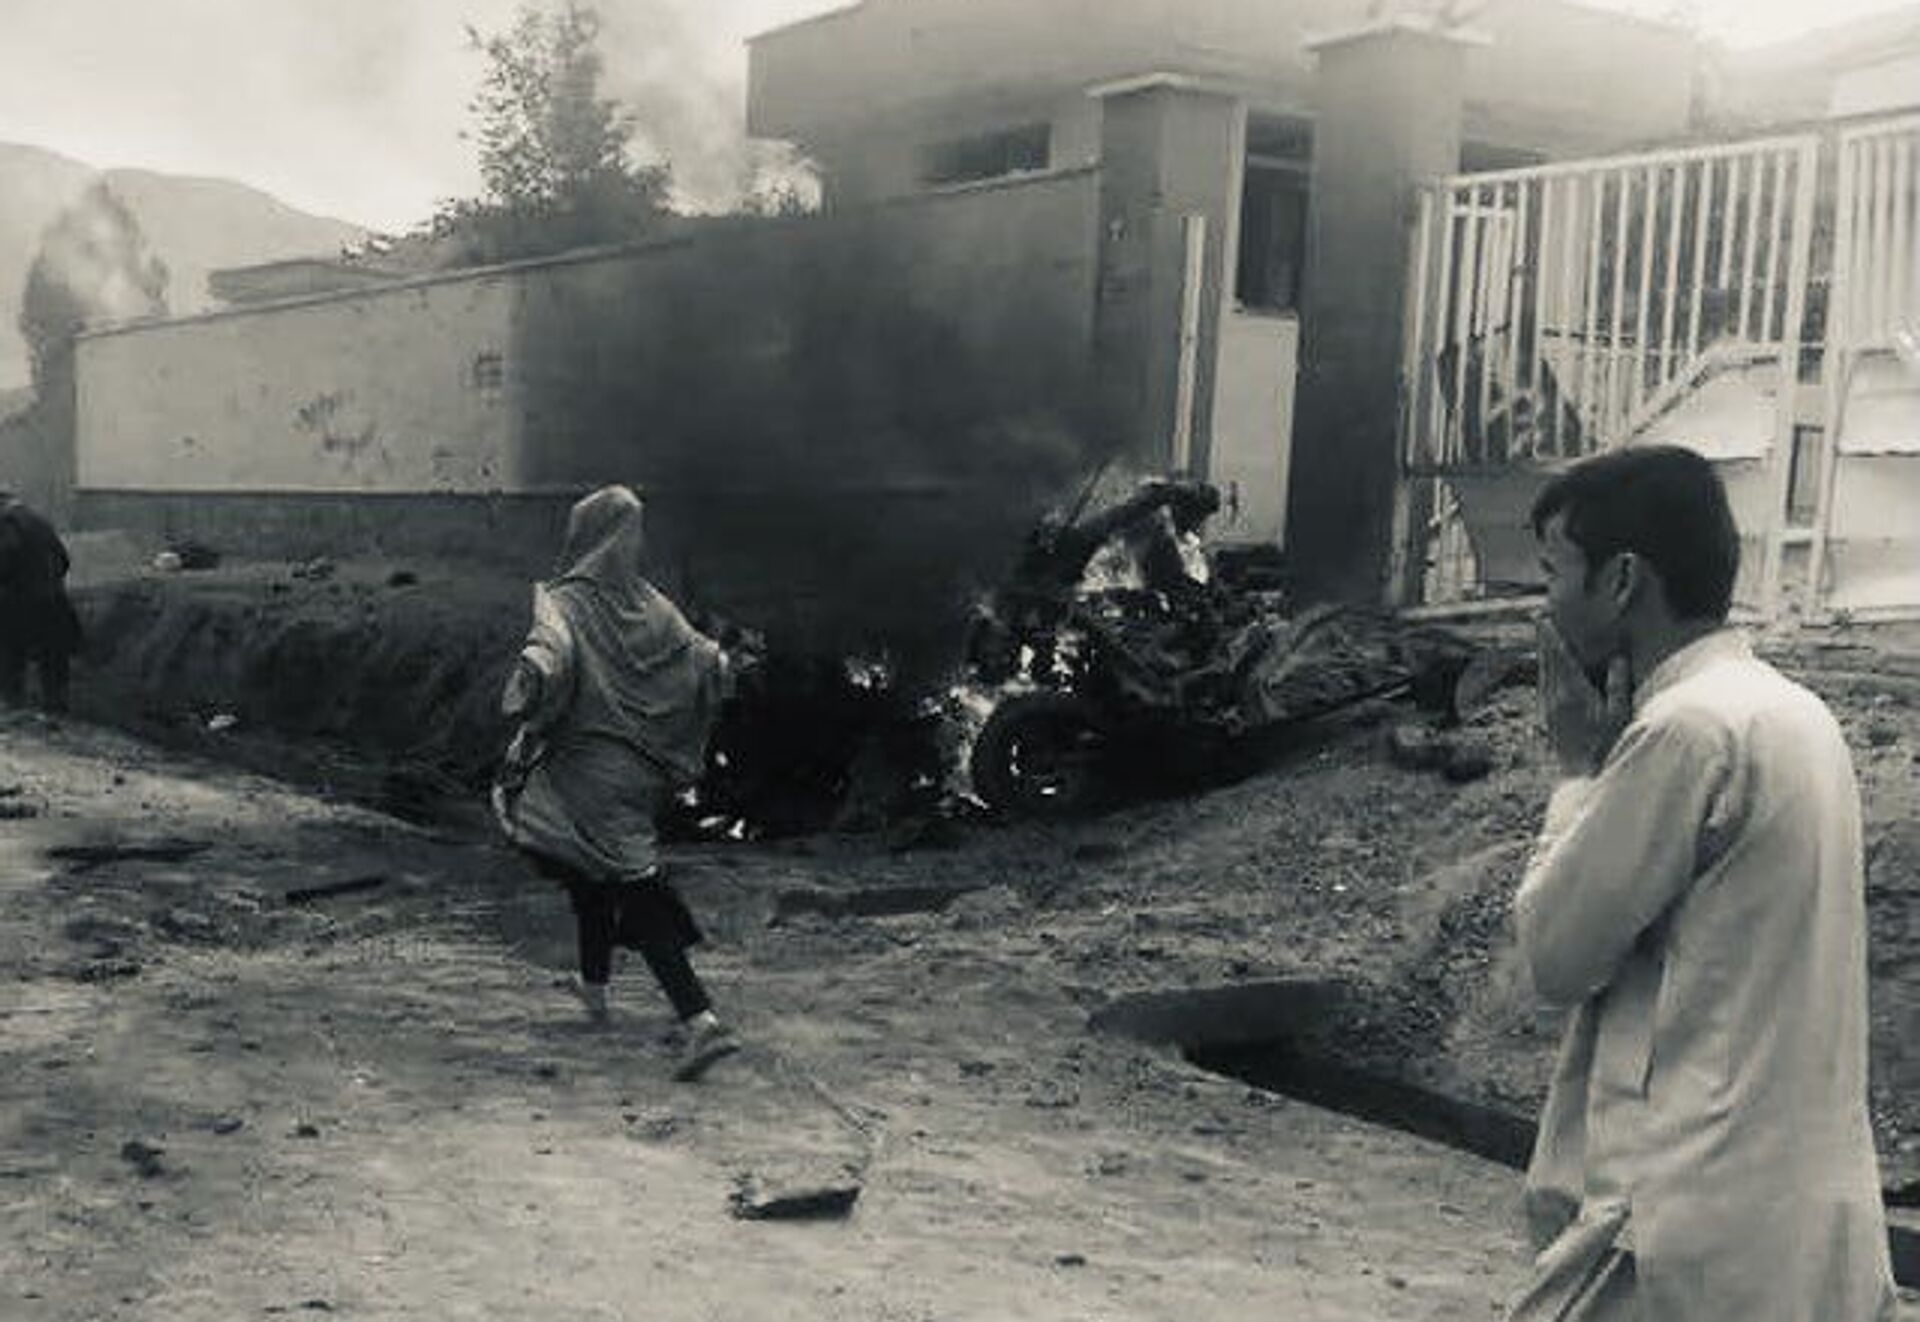  طالبان انفجار امروز کابل را کار داعش دانست  - اسپوتنیک افغانستان  , 1920, 08.05.2021